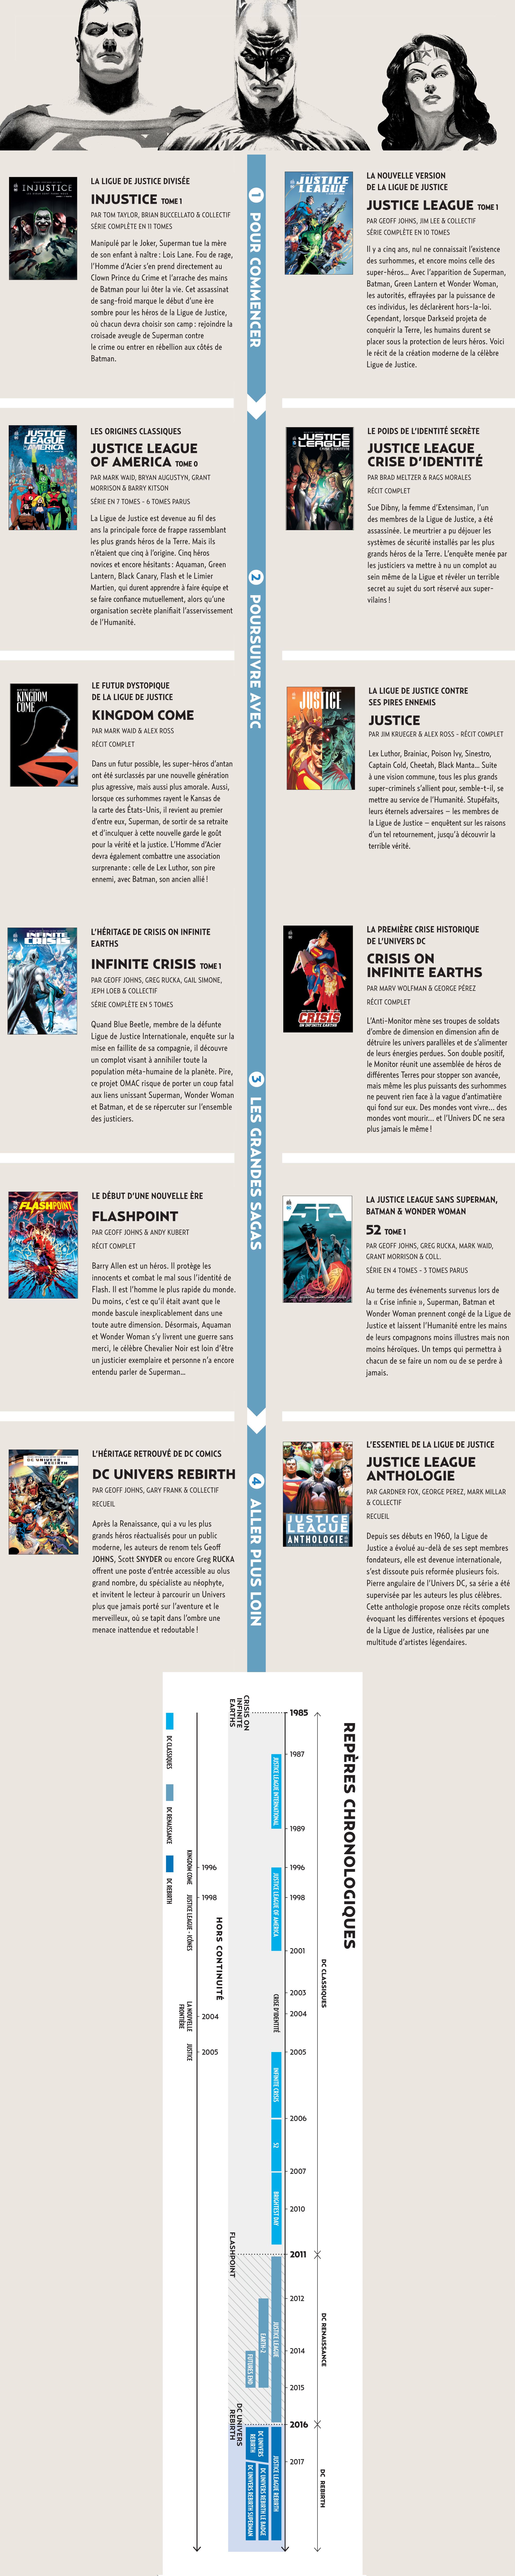 Infographie Justice League